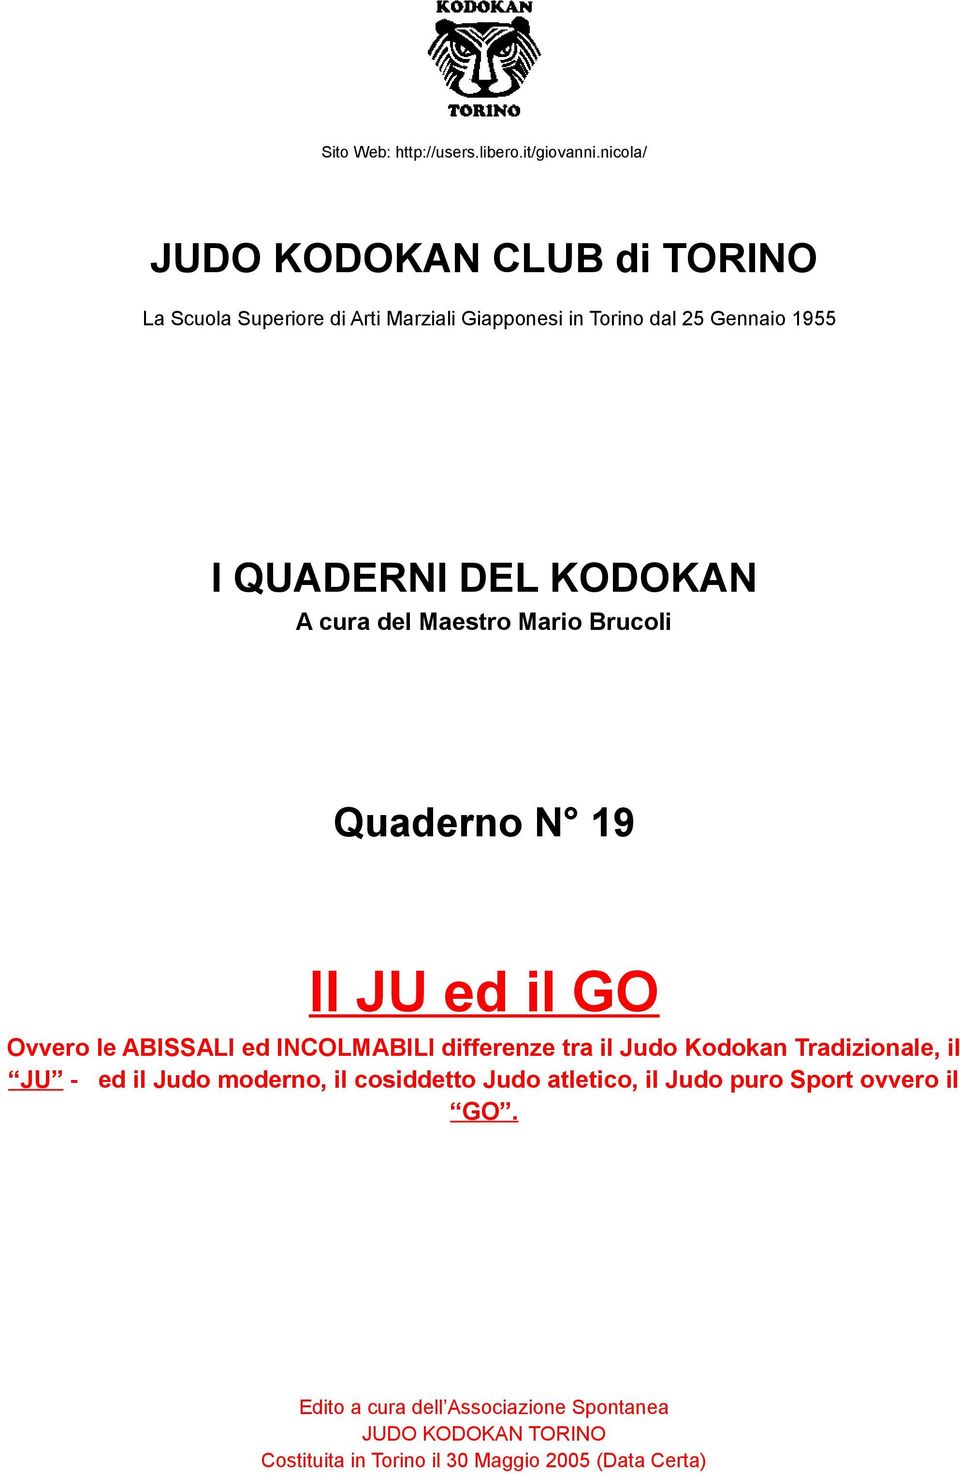 differenze tra il Judo Kodokan Tradizionale, il JU - ed il Judo moderno, il cosiddetto Judo atletico, il Judo puro